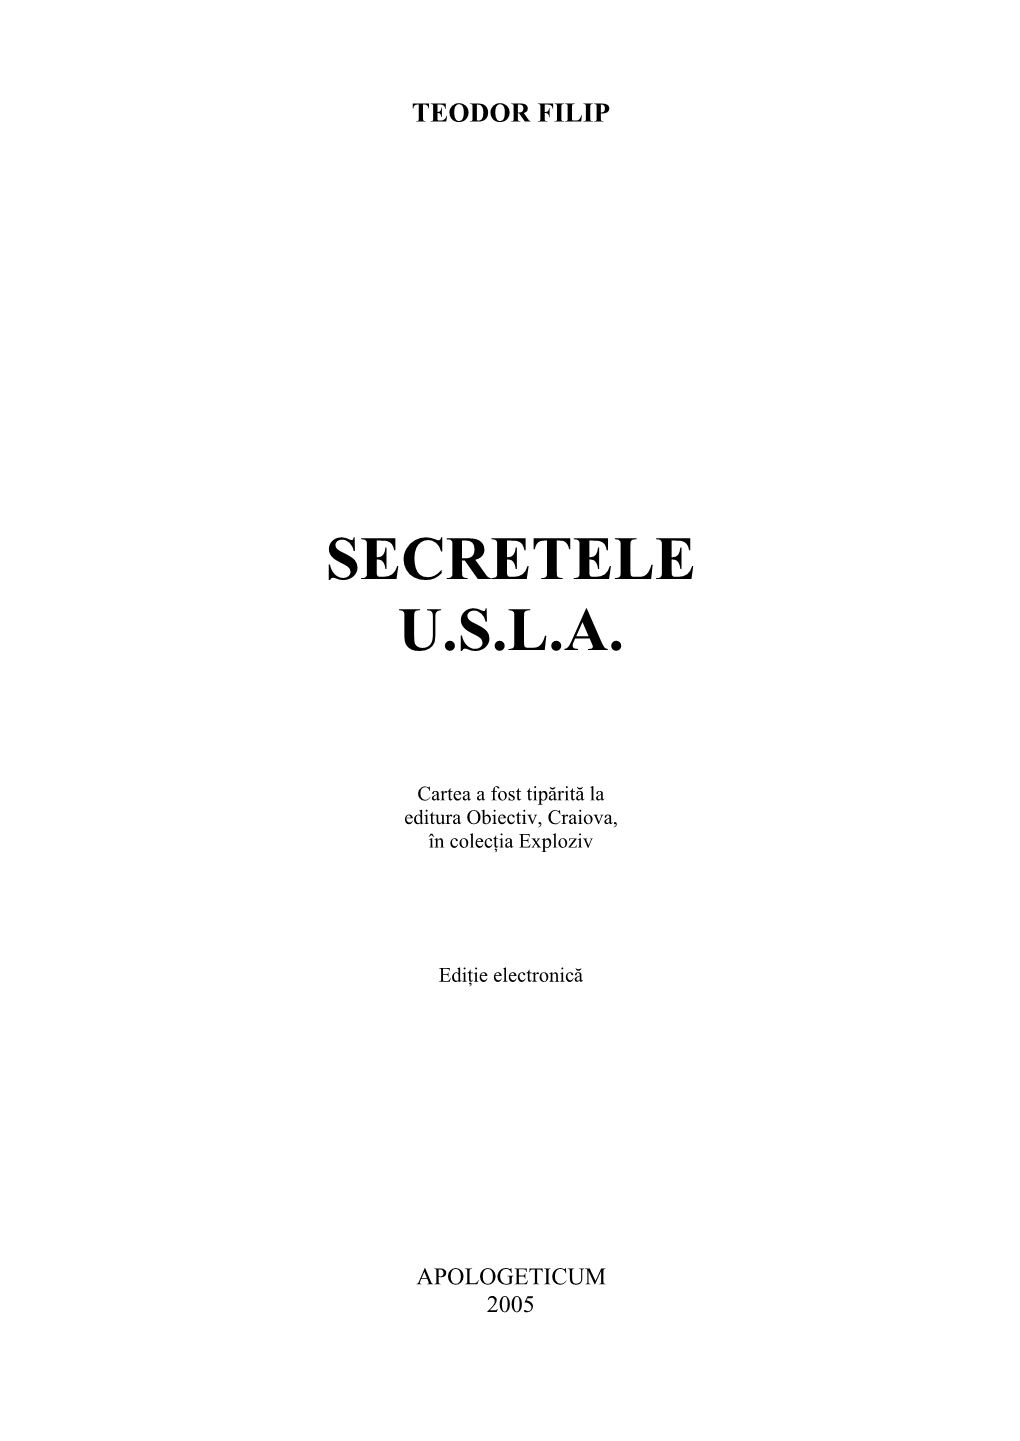 Secretele U.S.L.A